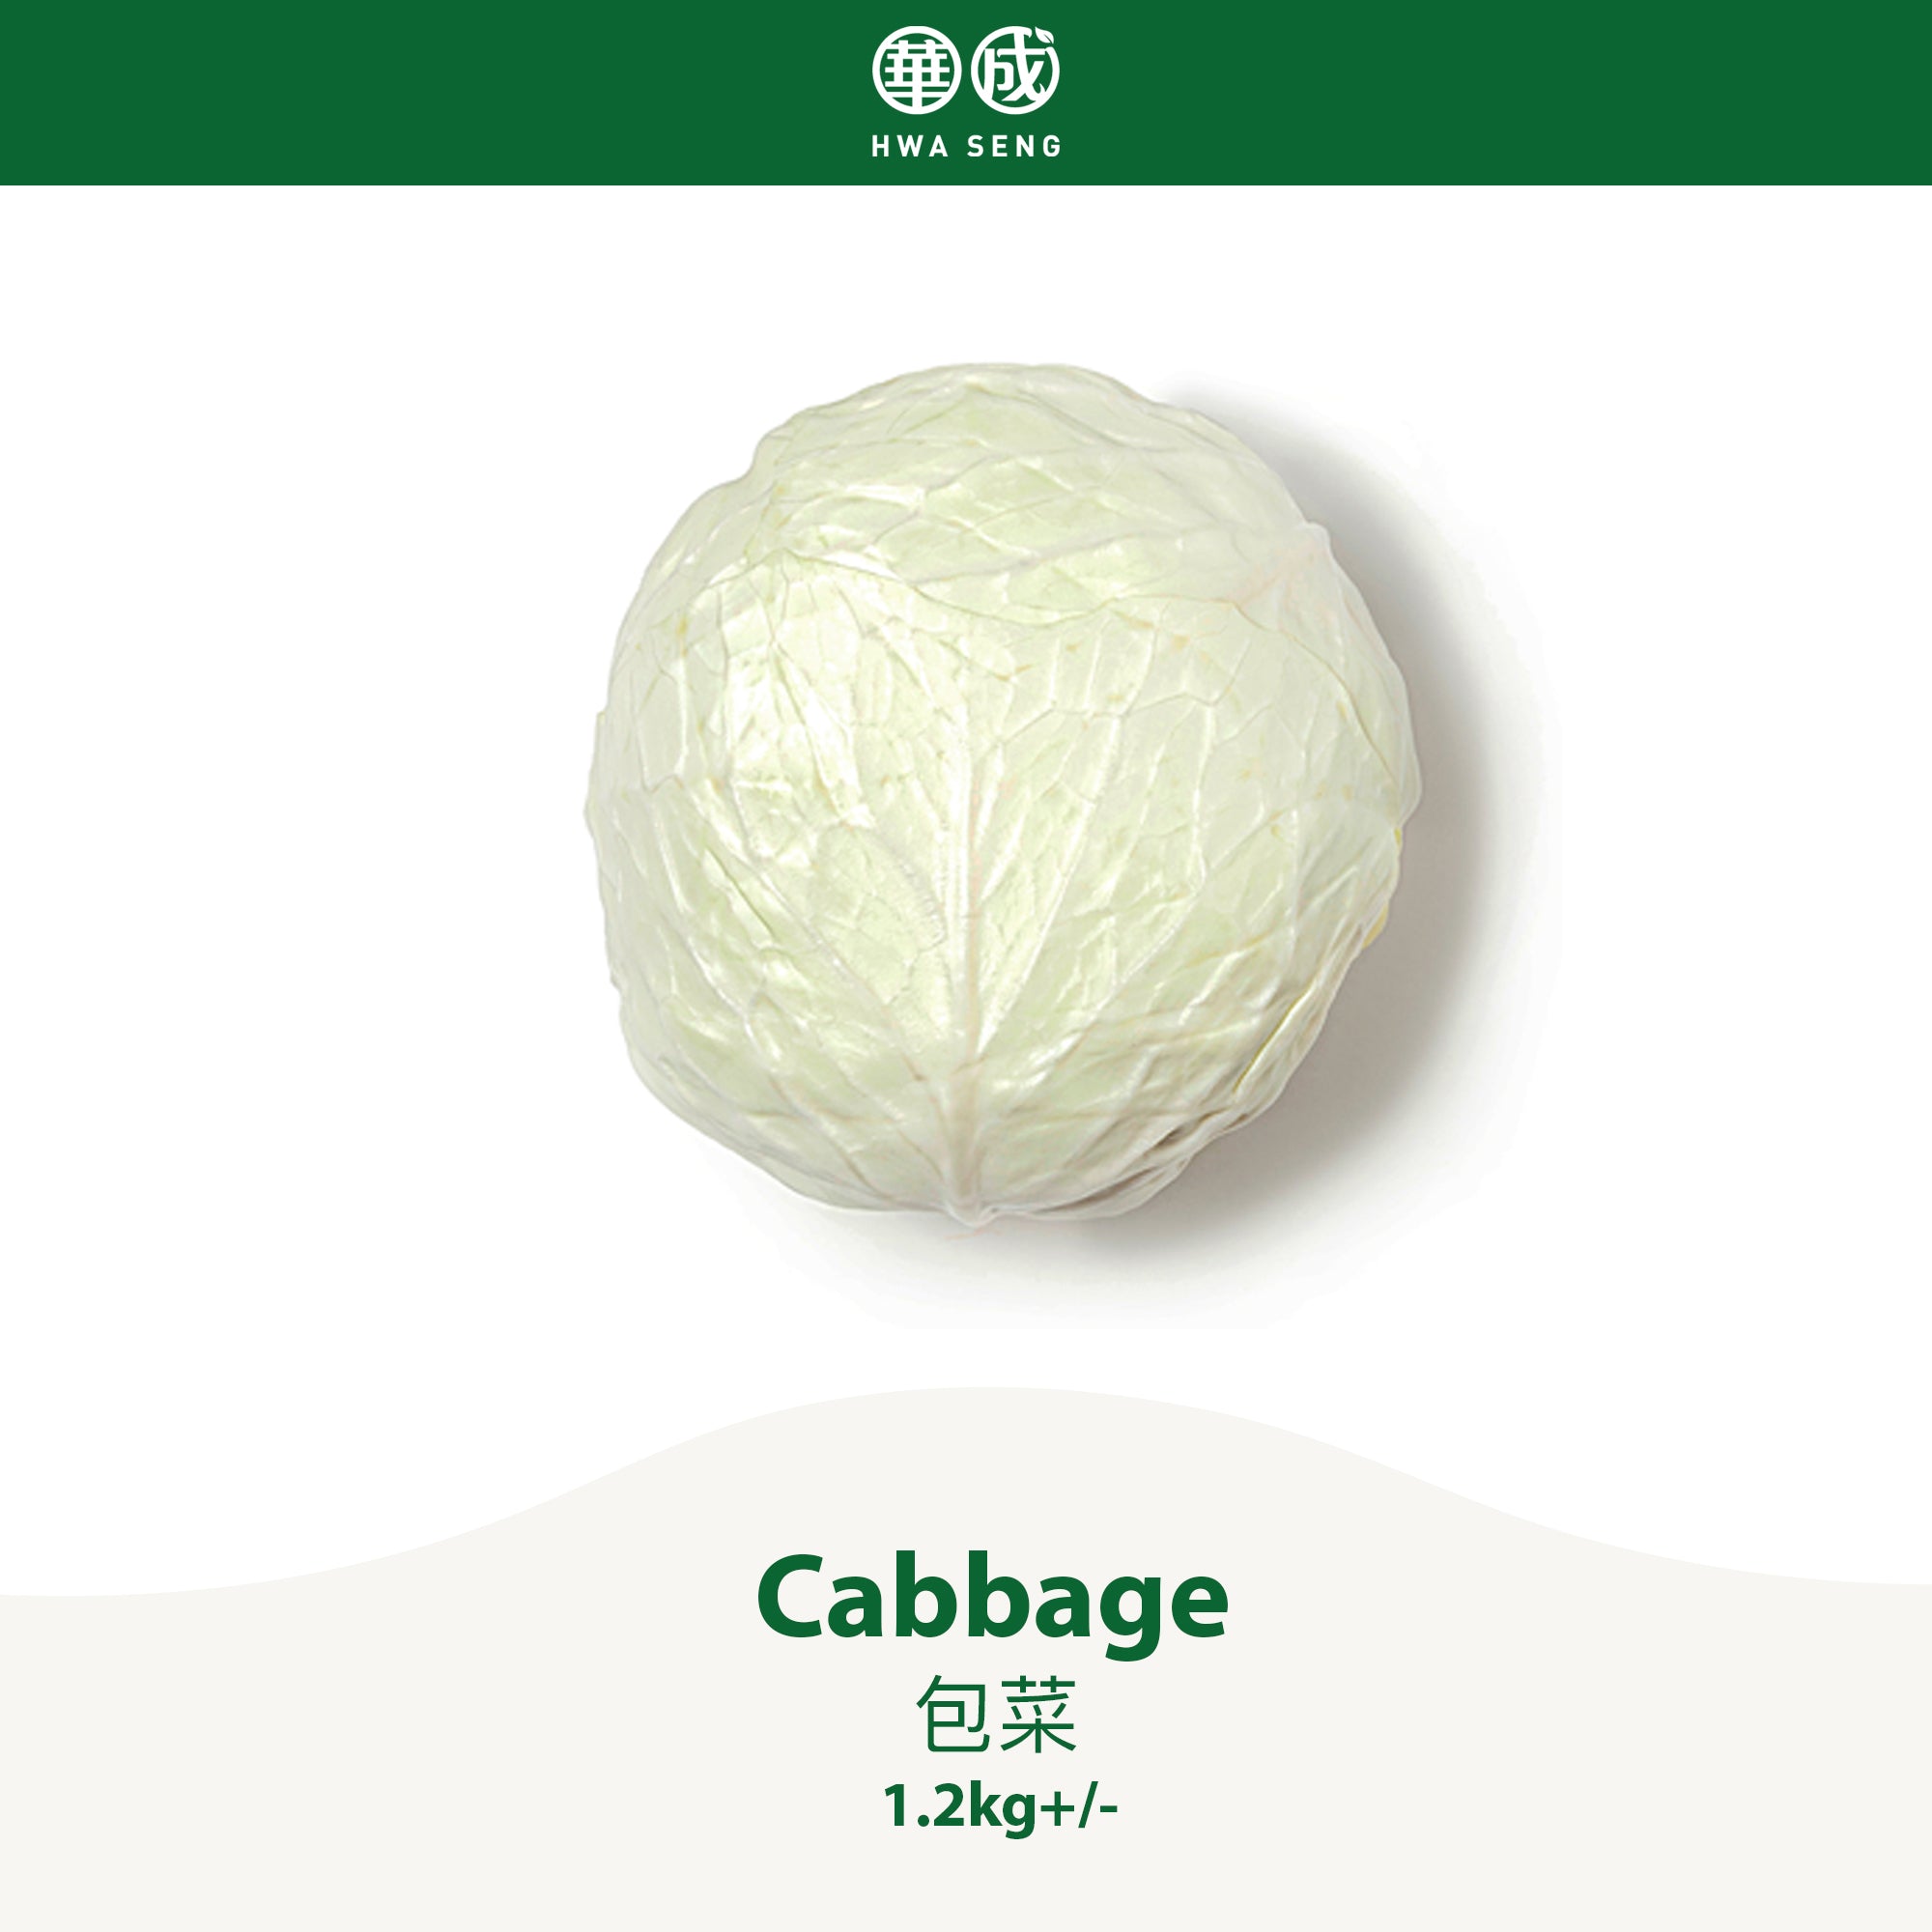 Cabbage 包菜 1.2kg+/-